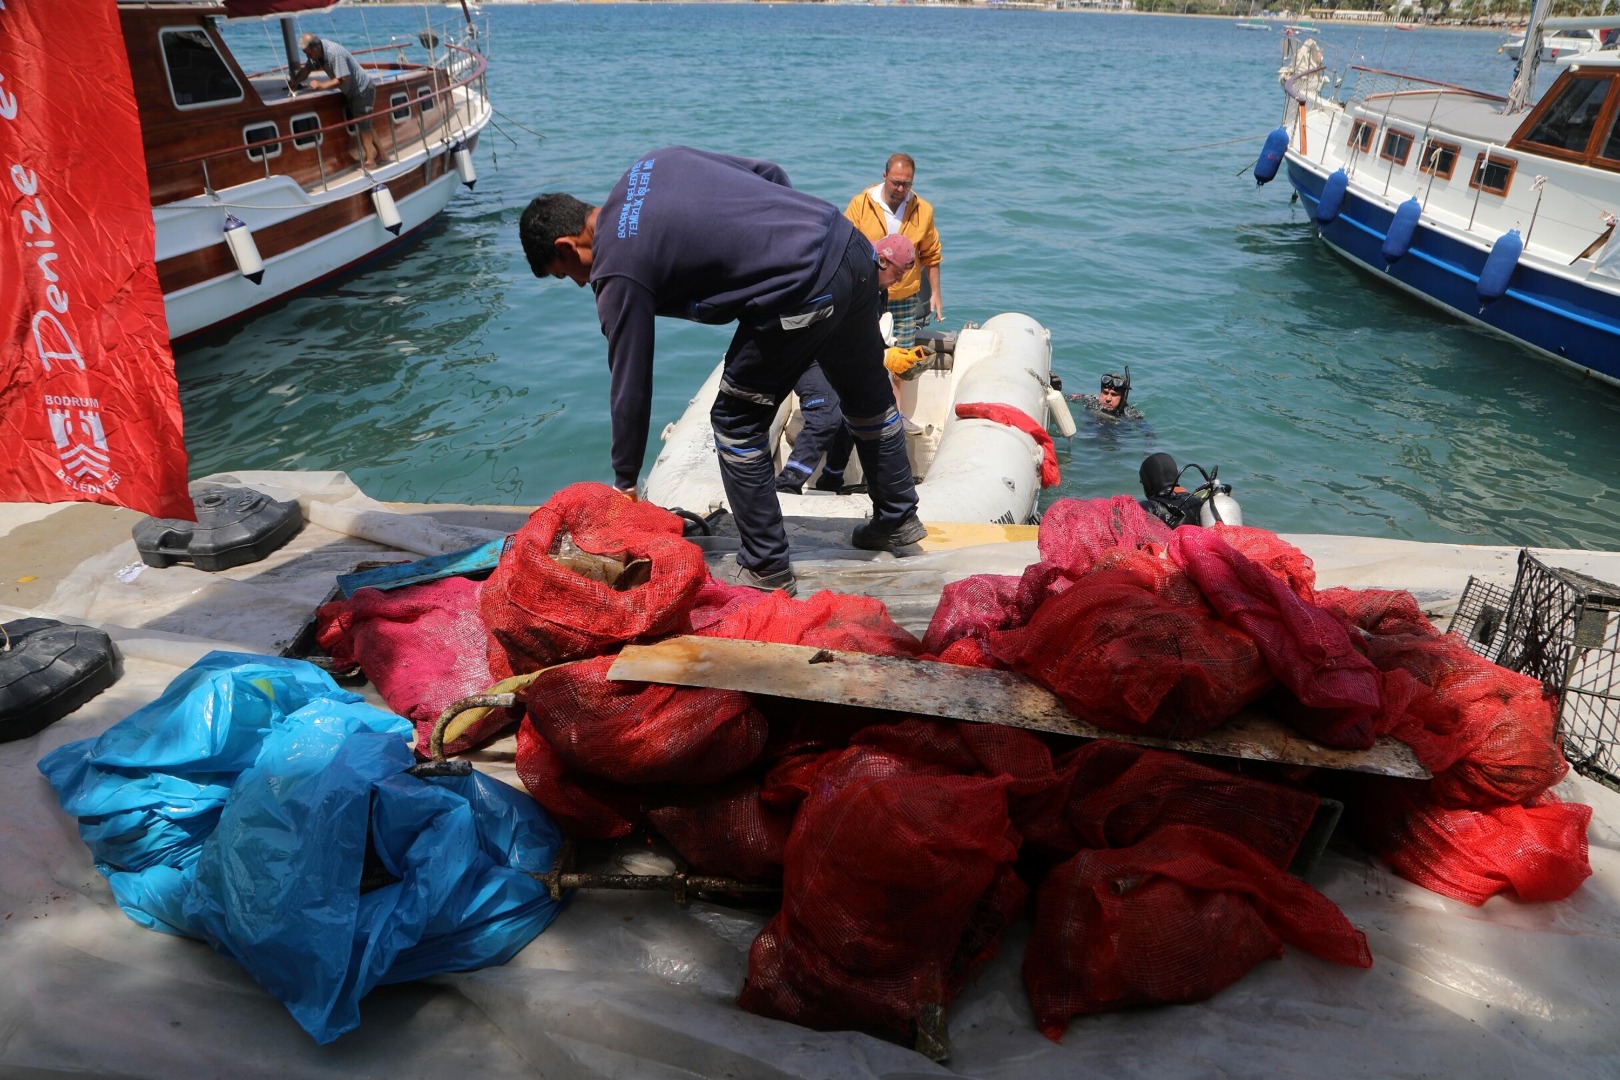 Sahilden geçenler gözlerini alamadı: Denizin dibine daldılar 342 kilo çıkardılar 13